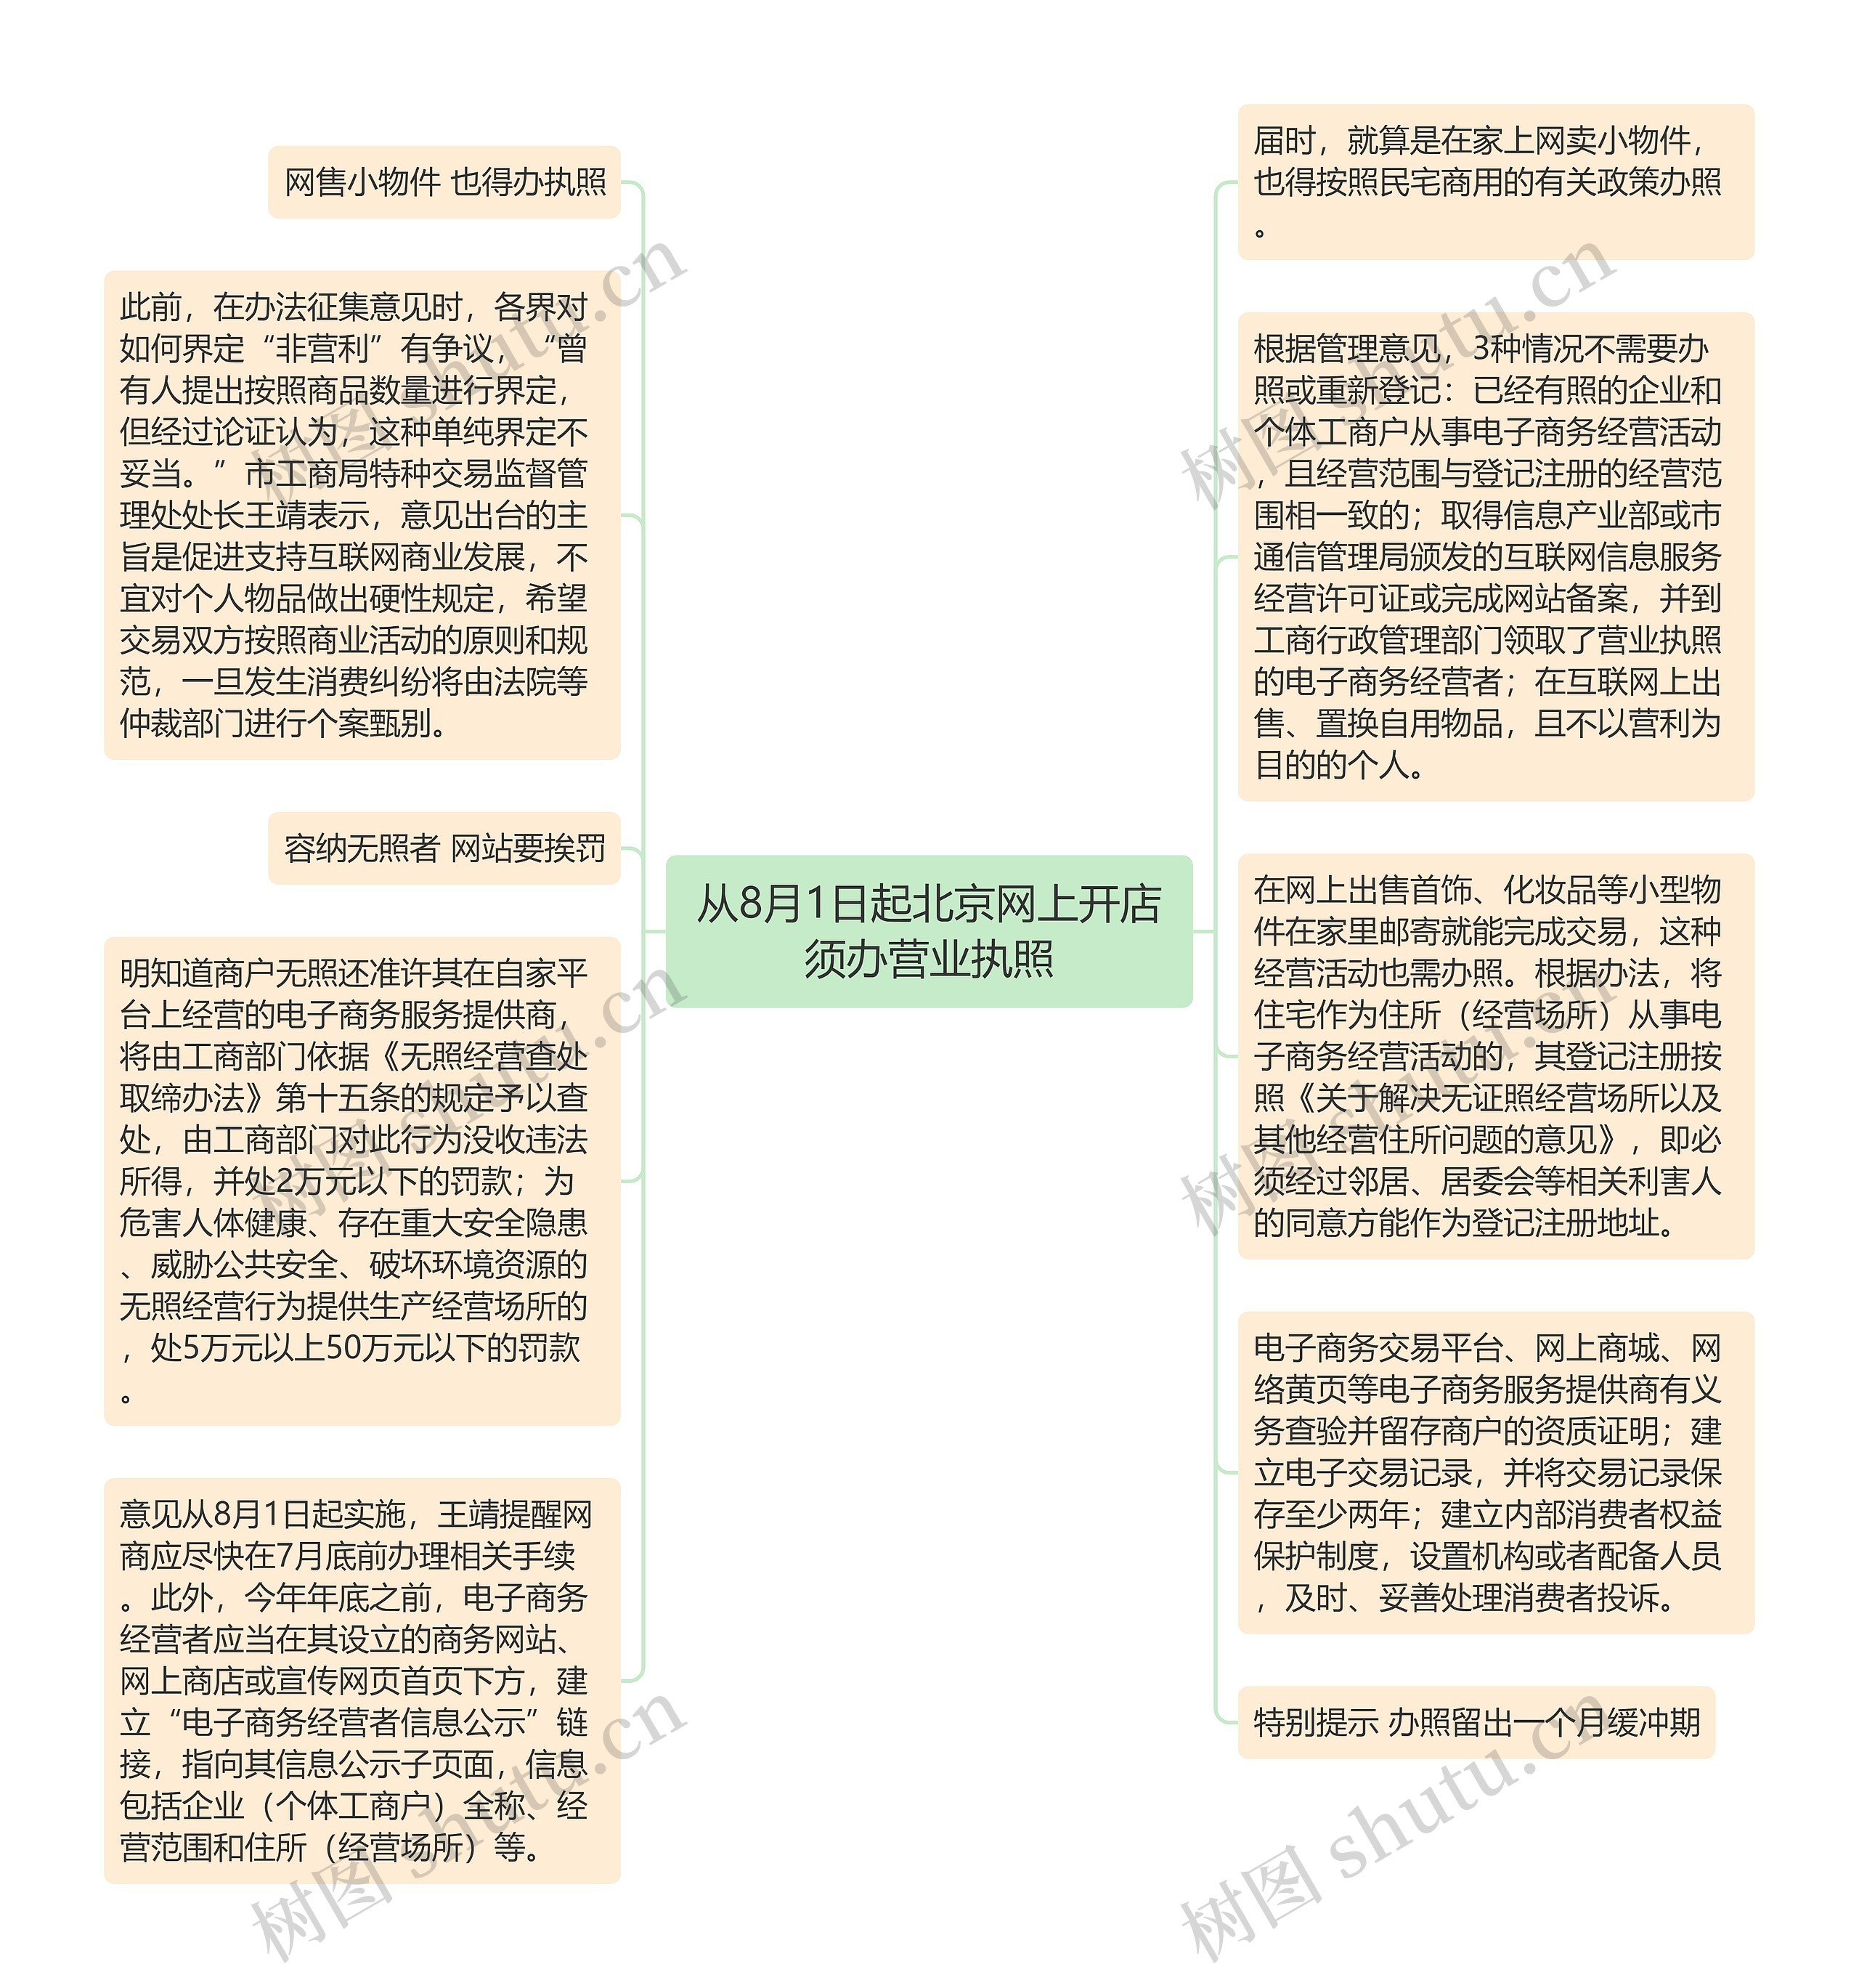 从8月1日起北京网上开店须办营业执照思维导图